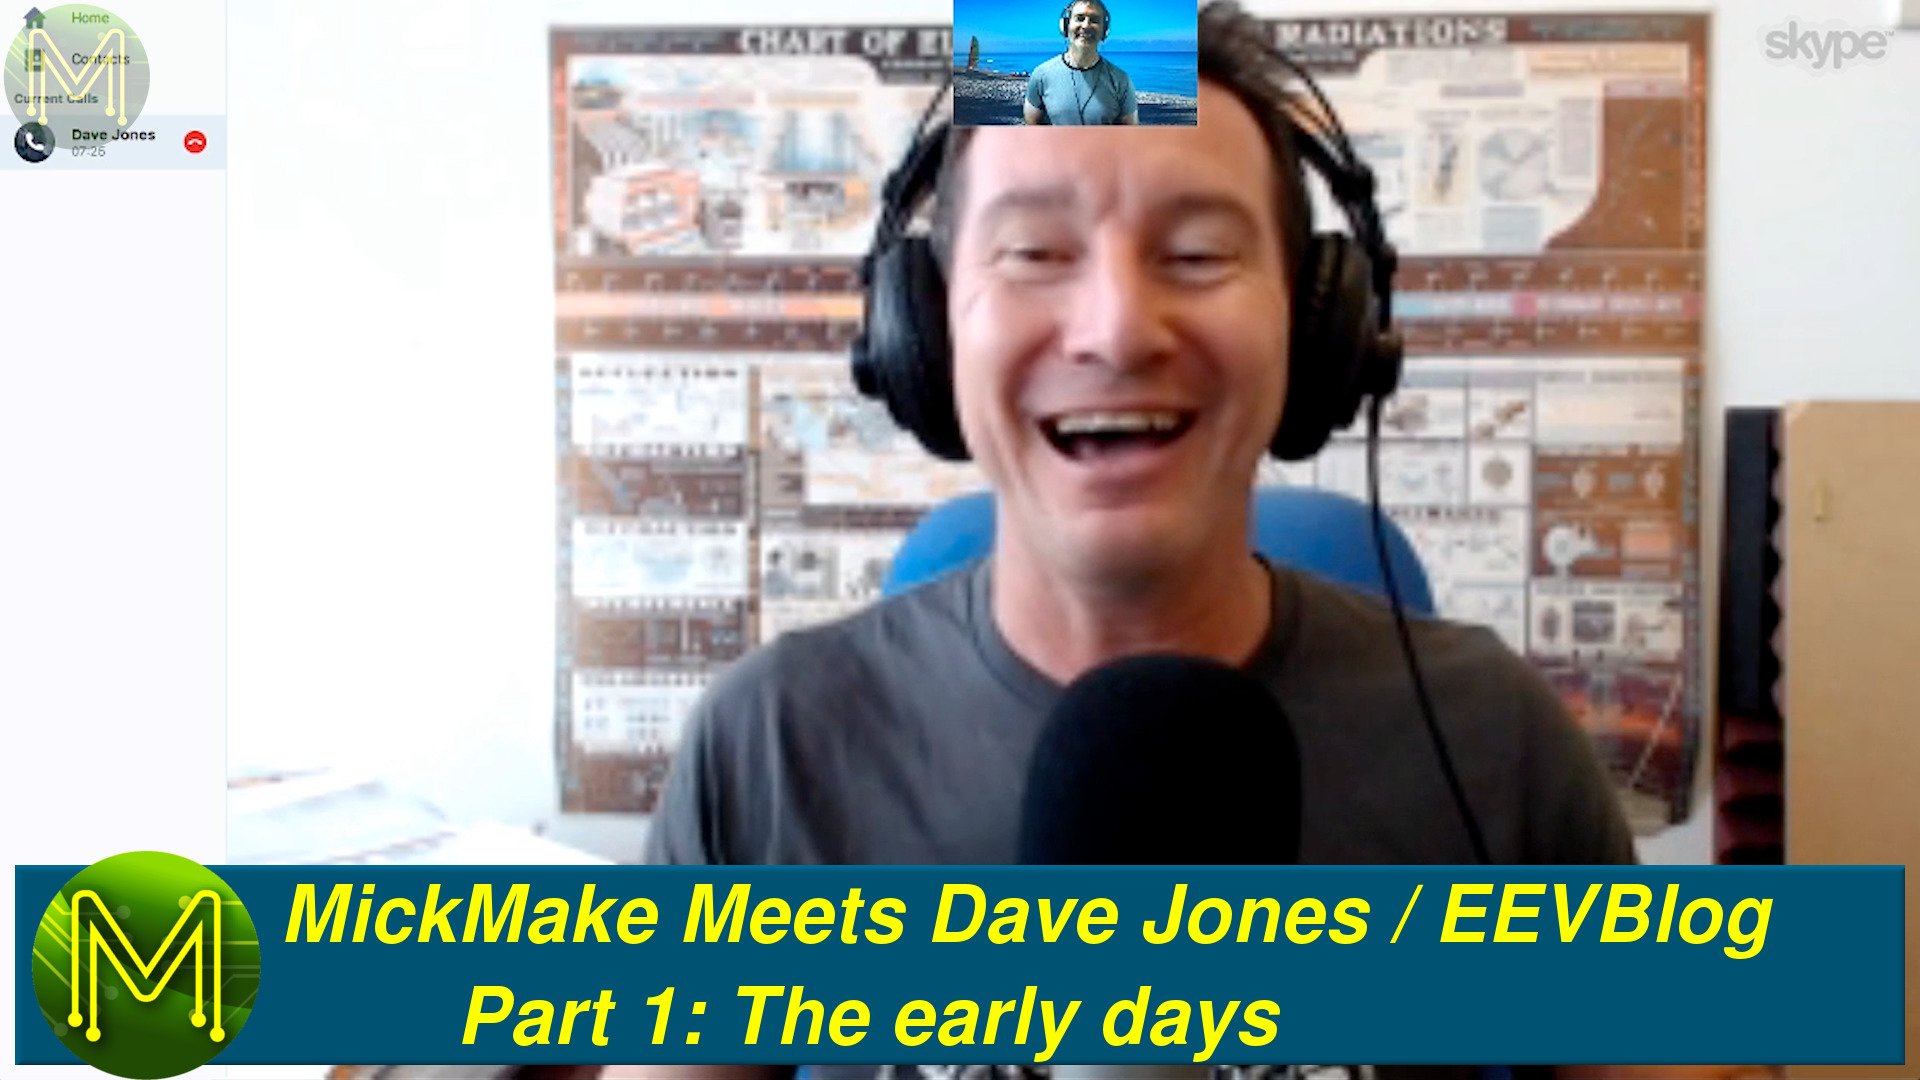 MickMake Meets: Dave Jones / EEVBlog - The interviews